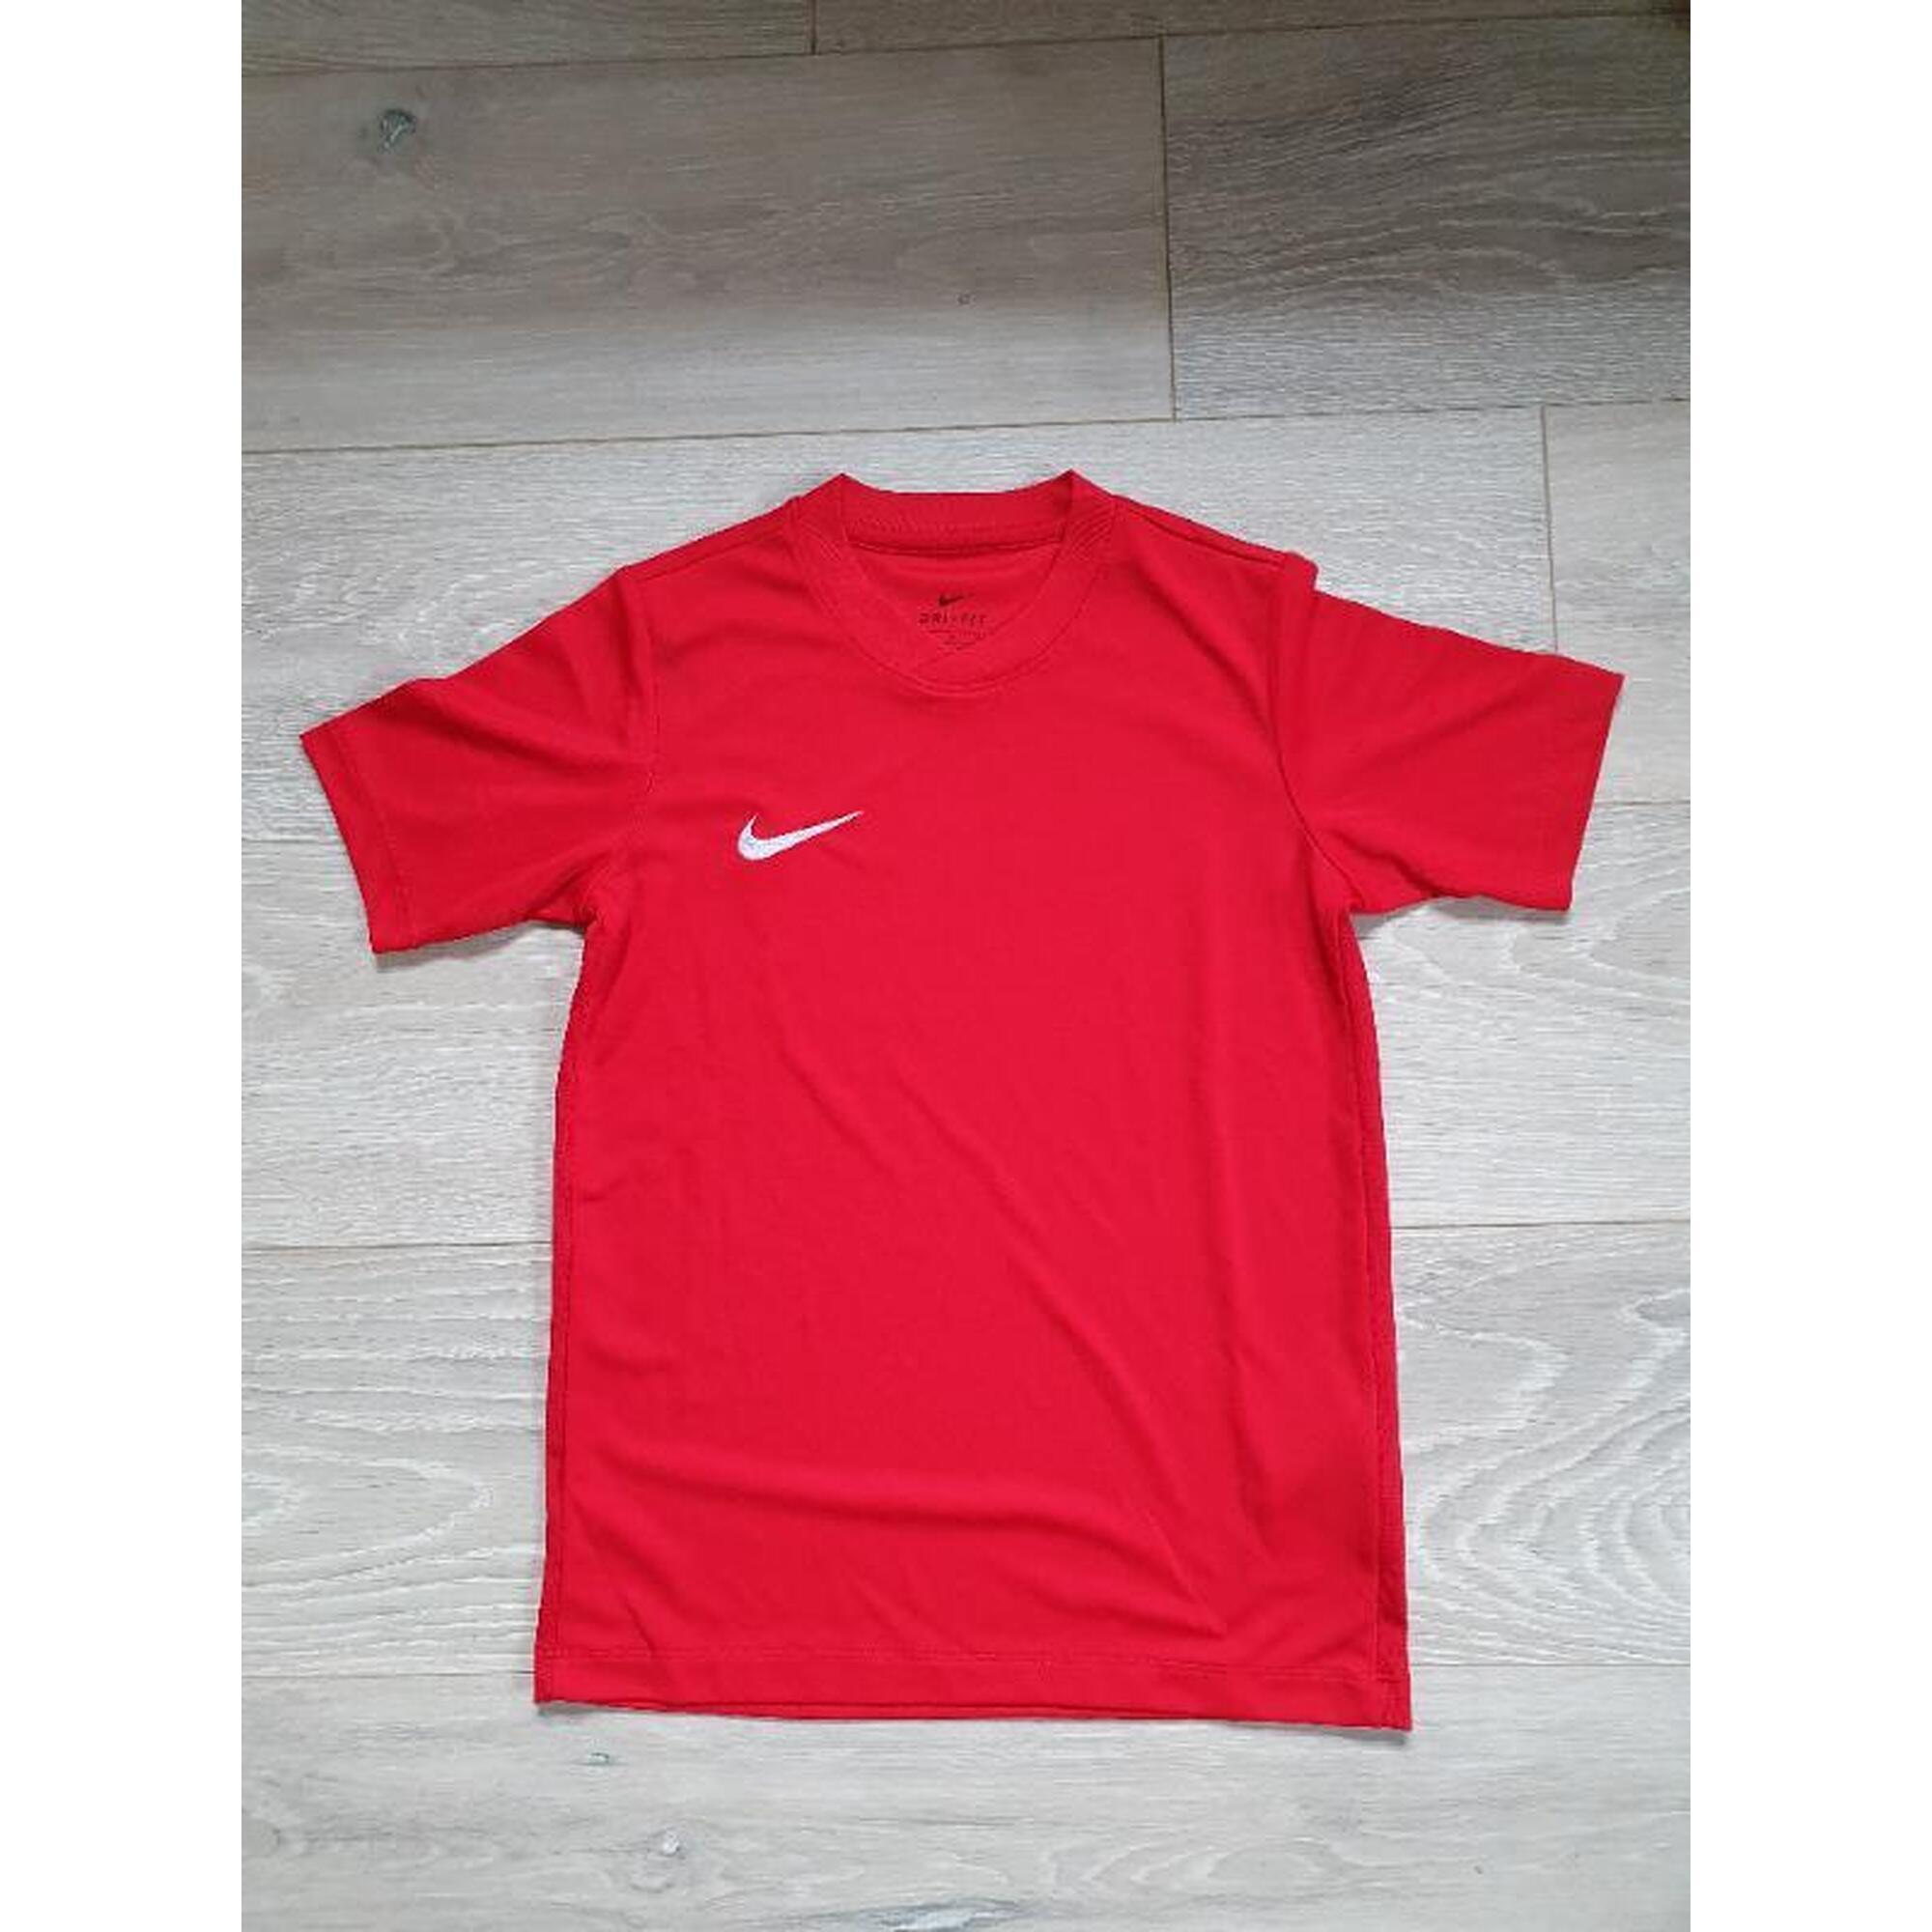 C2C - Rode t-shirt Nike maat 8-10 jaar